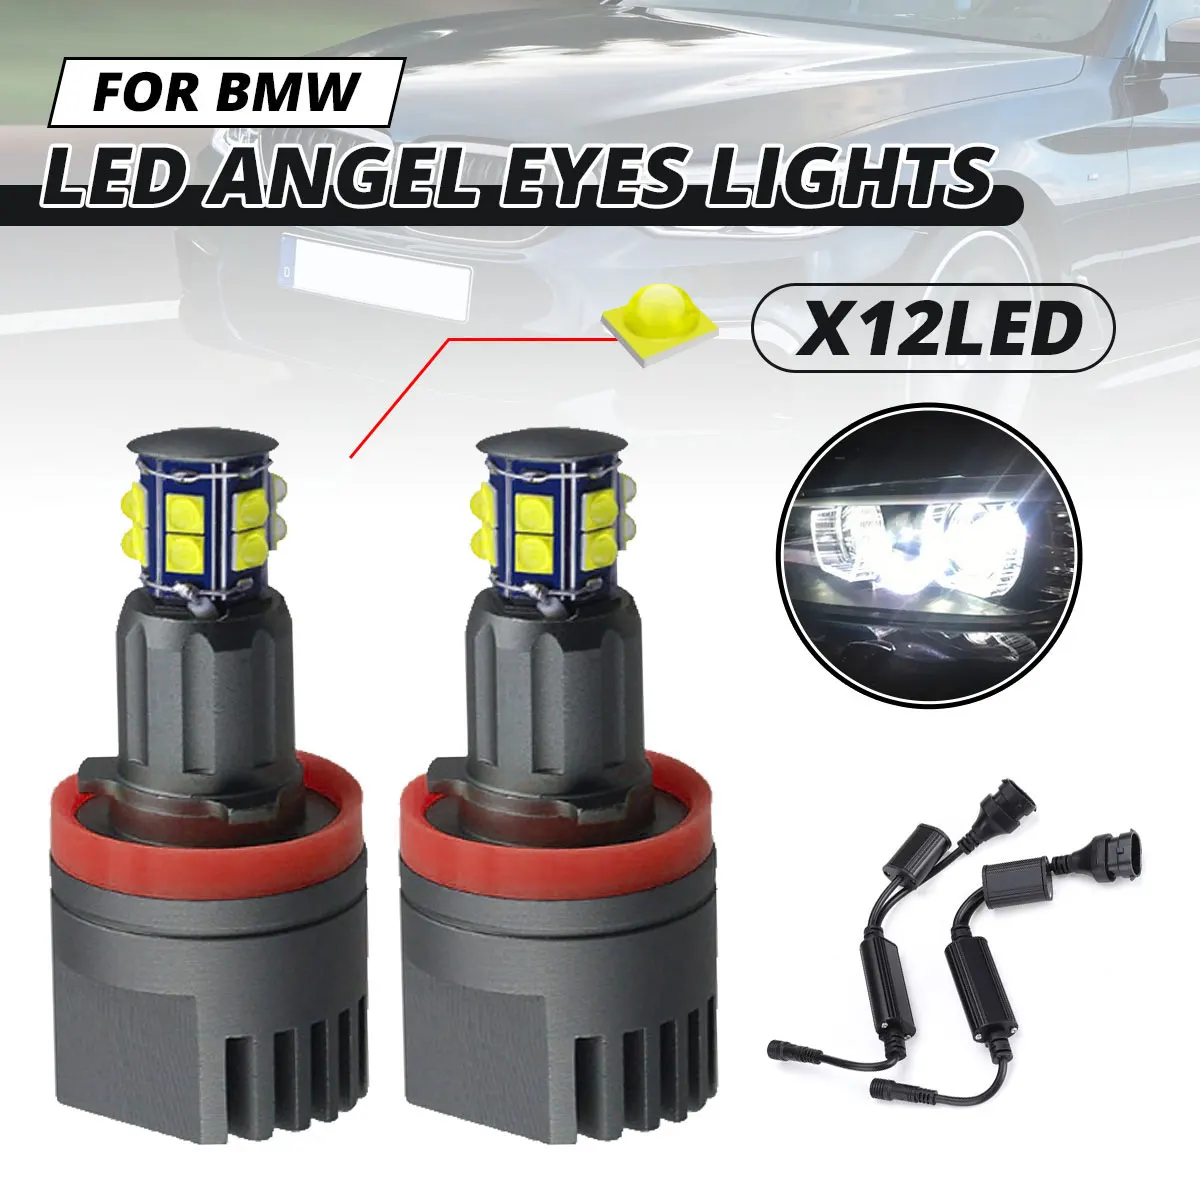 

2Pcs 120W H8 LED Angel Eyes Fog Light Ring Headlight Canbus For BMW E60 E61 E63 X5 E70 X6 E71 E90 E91 E92 E93 M3 E89 E82 E87